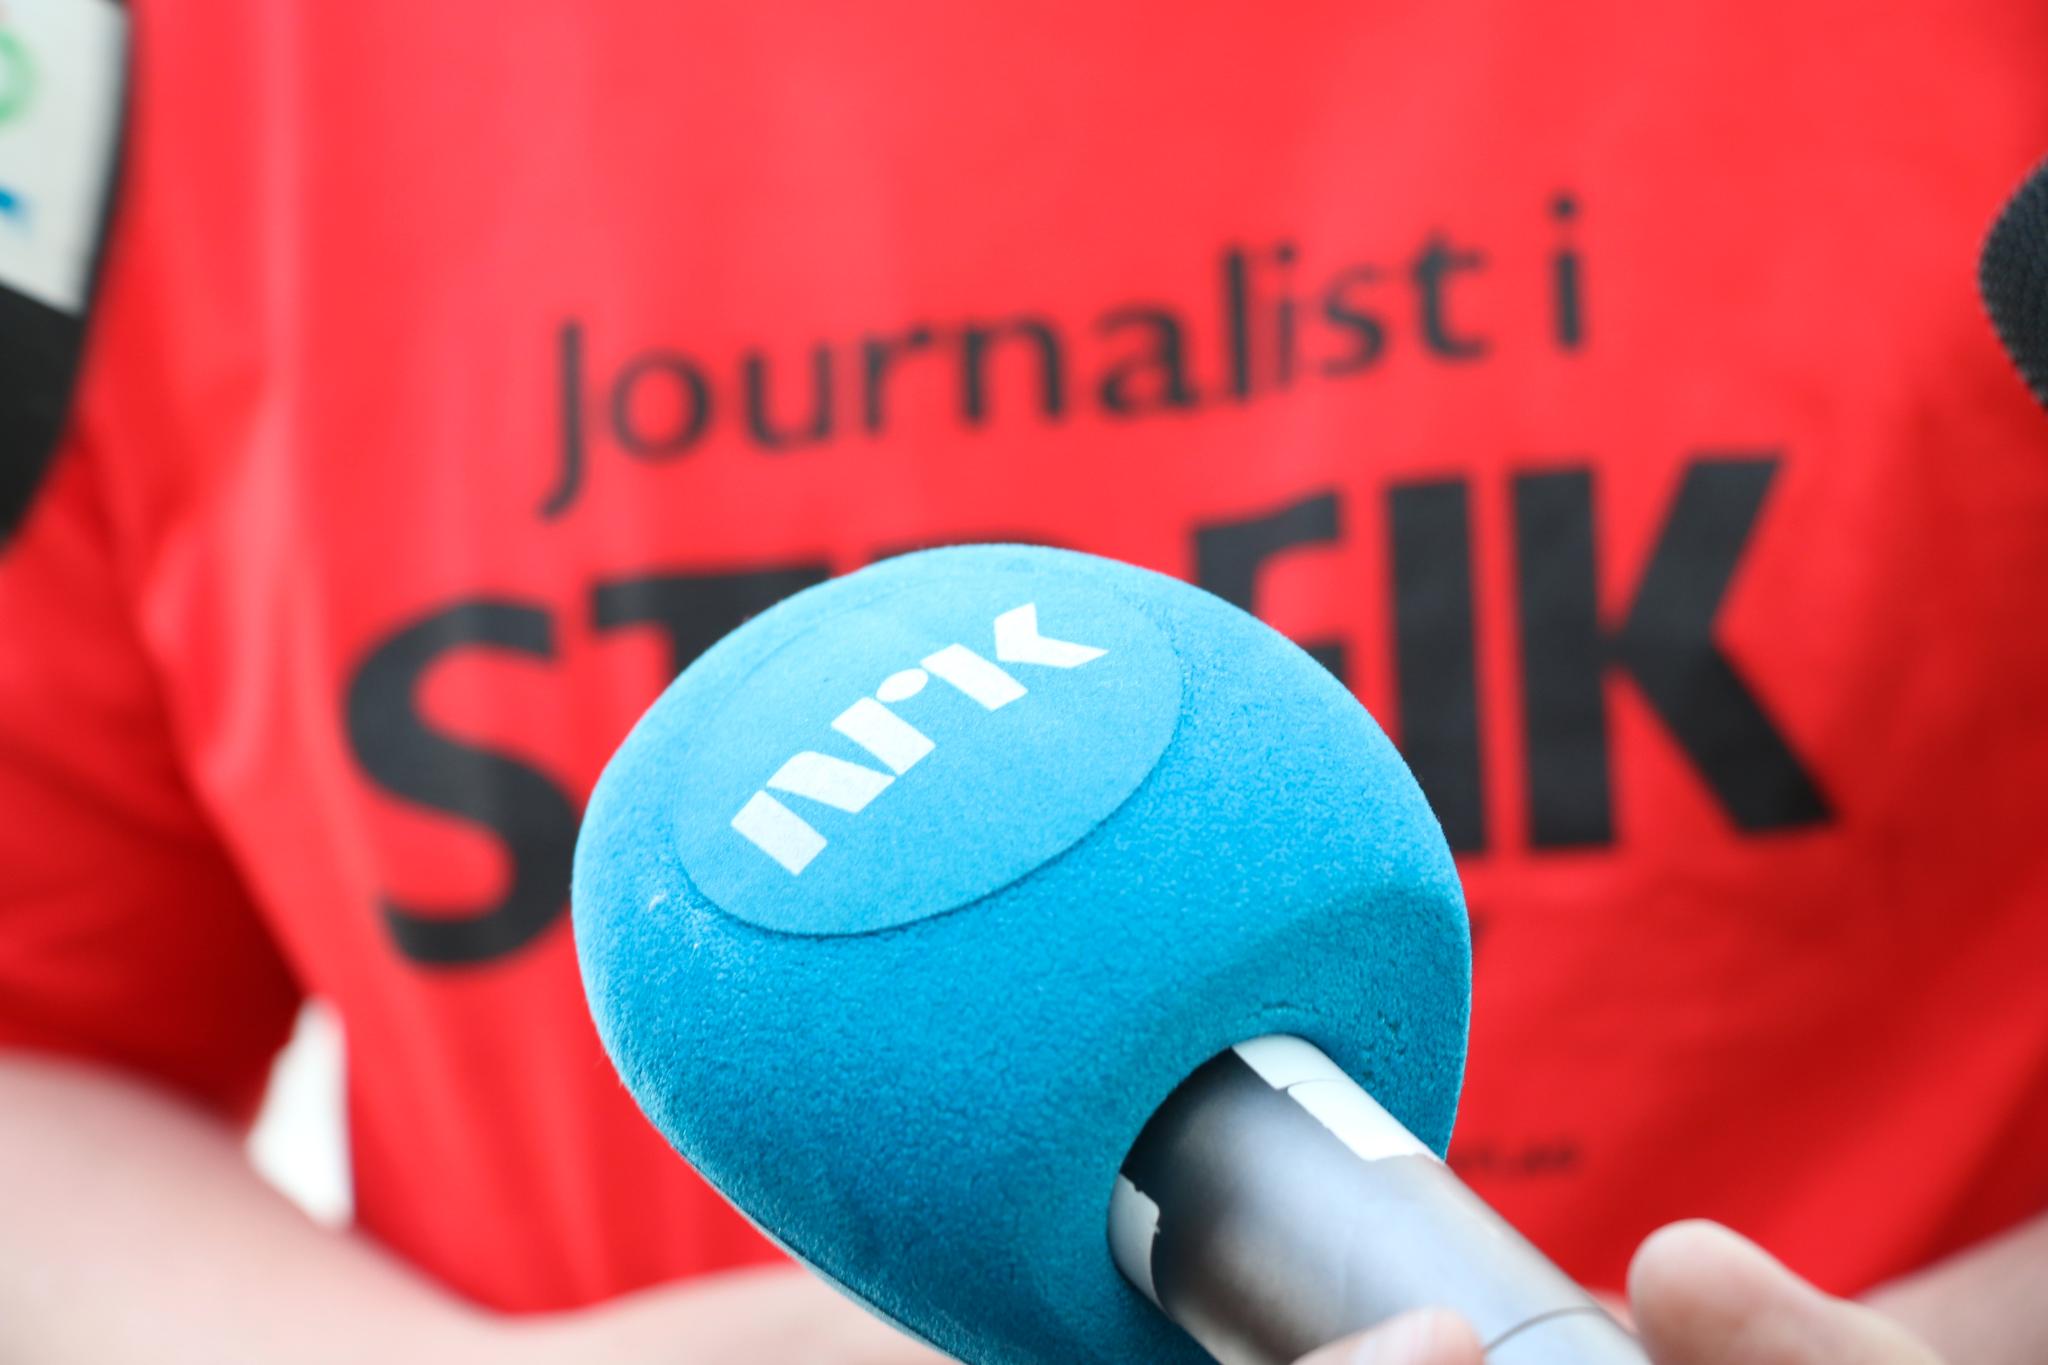 1700 journalister i NRK var tatt ut i streiken som onsdag ble avsluttet.